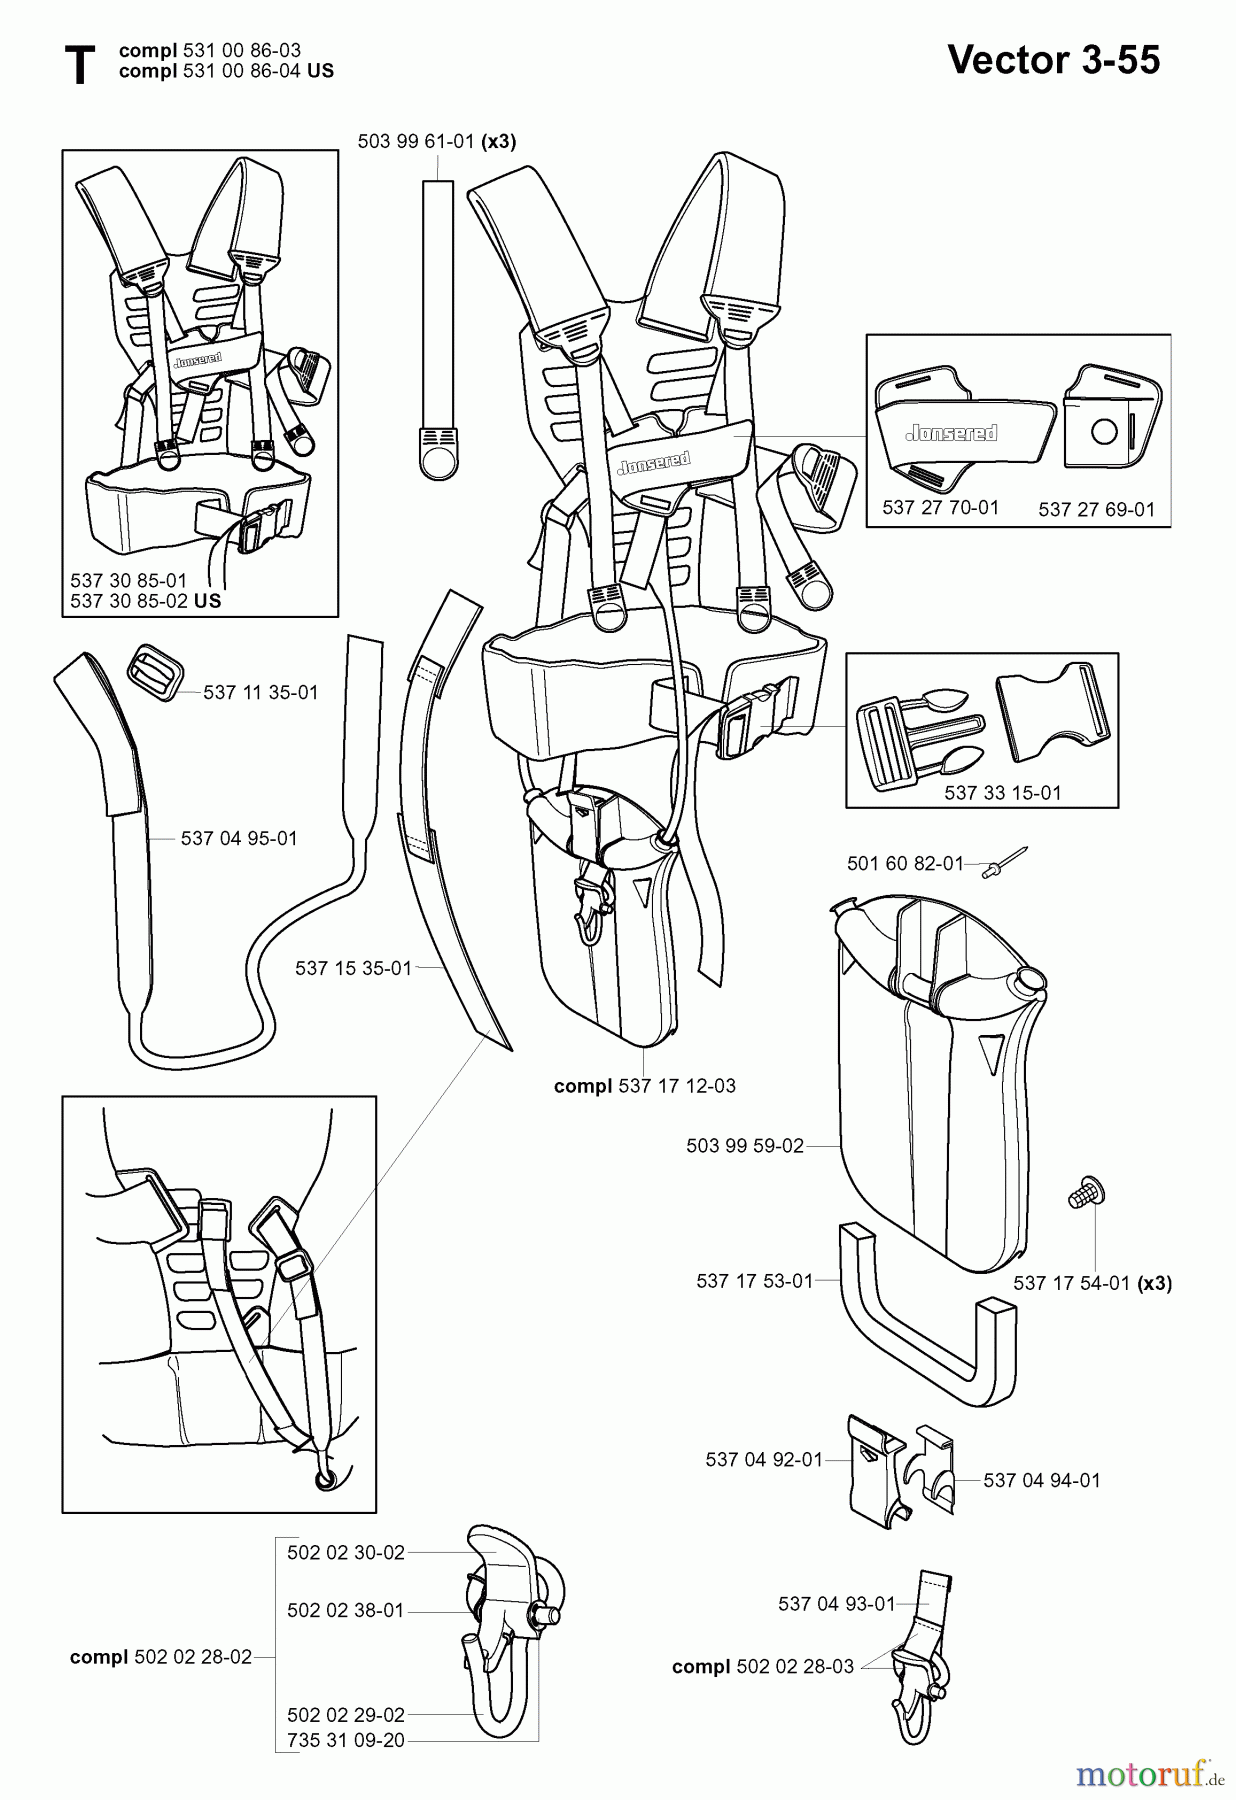  Jonsered Motorsensen, Trimmer RS44 - Jonsered String/Brush Trimmer (2006-01) HARNESS #2